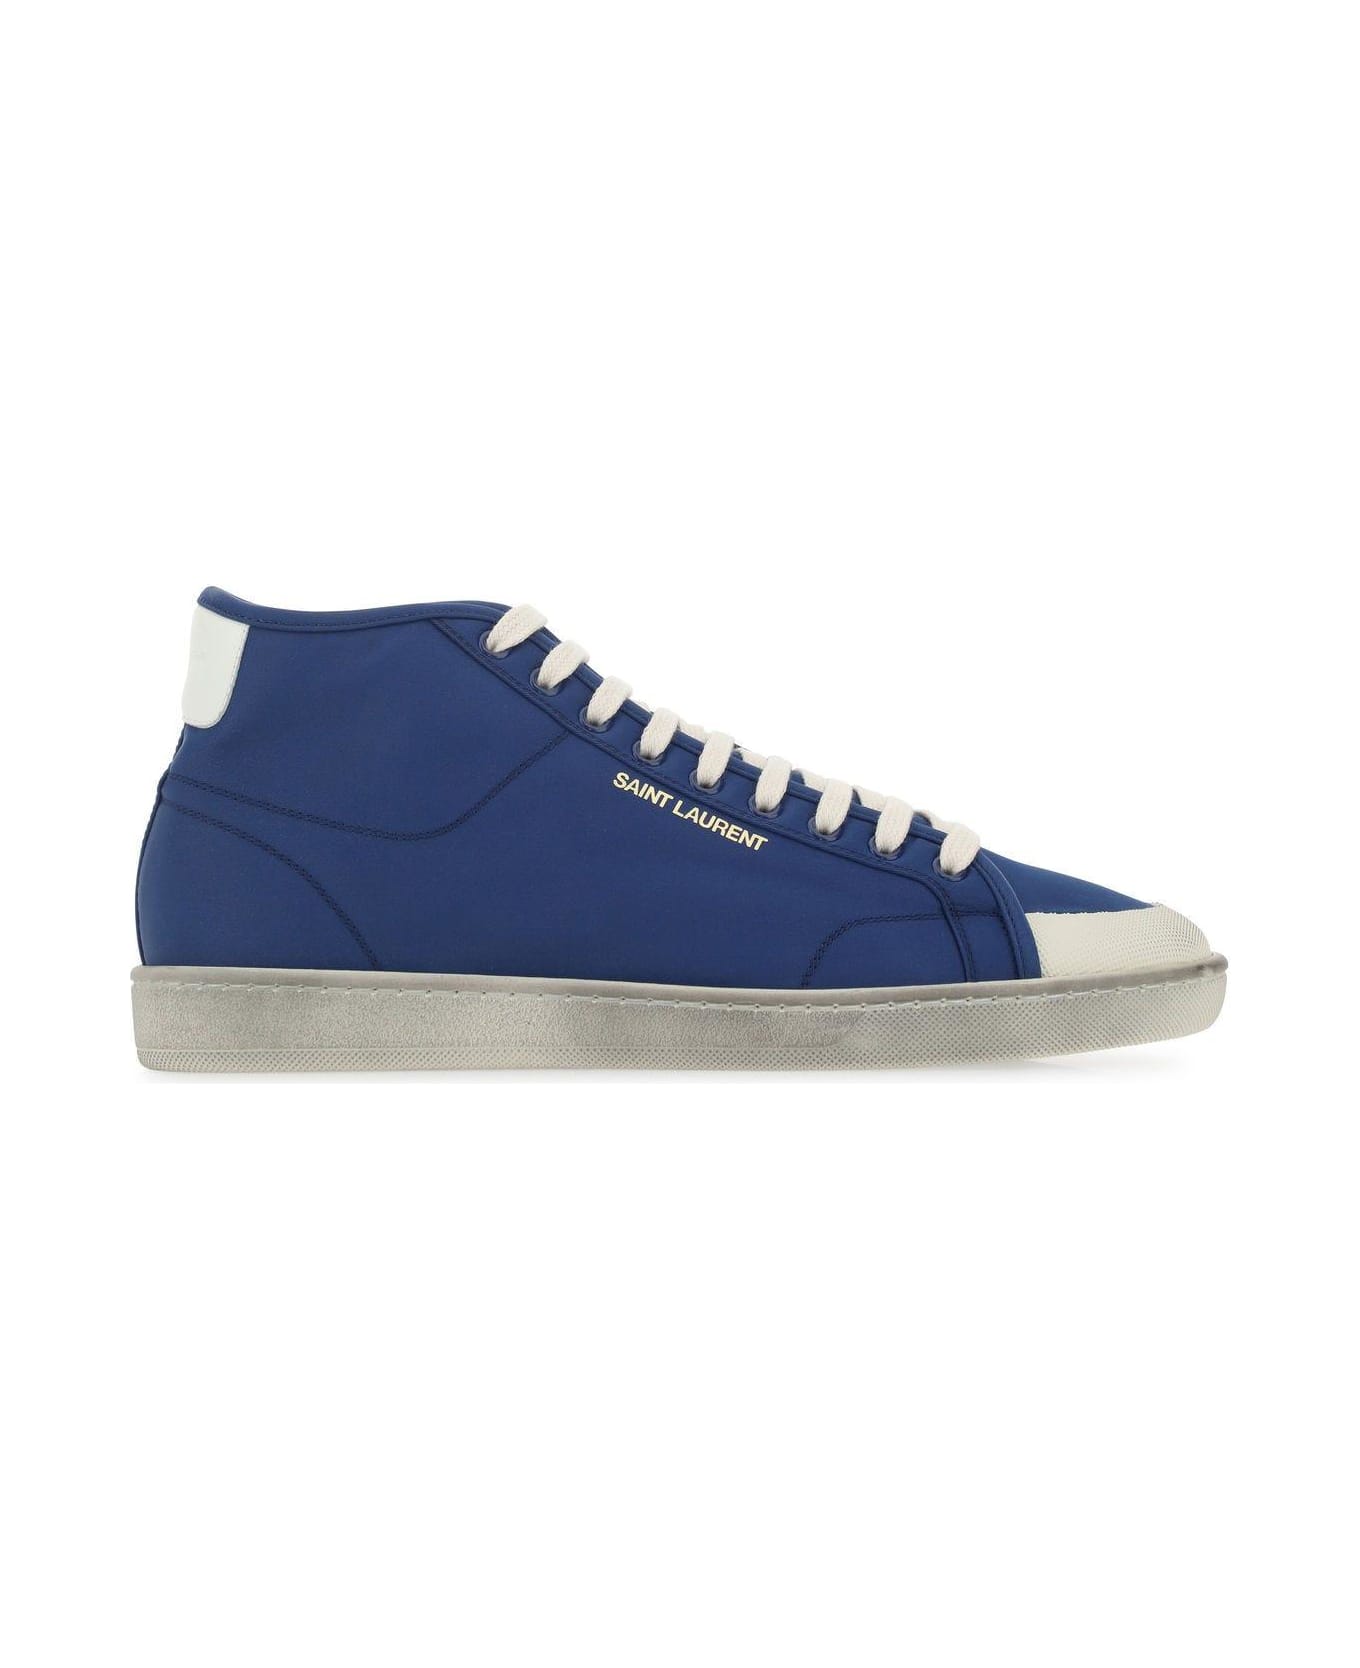 Saint Laurent Nylon Sl/39 Sneakers - Blue スニーカー